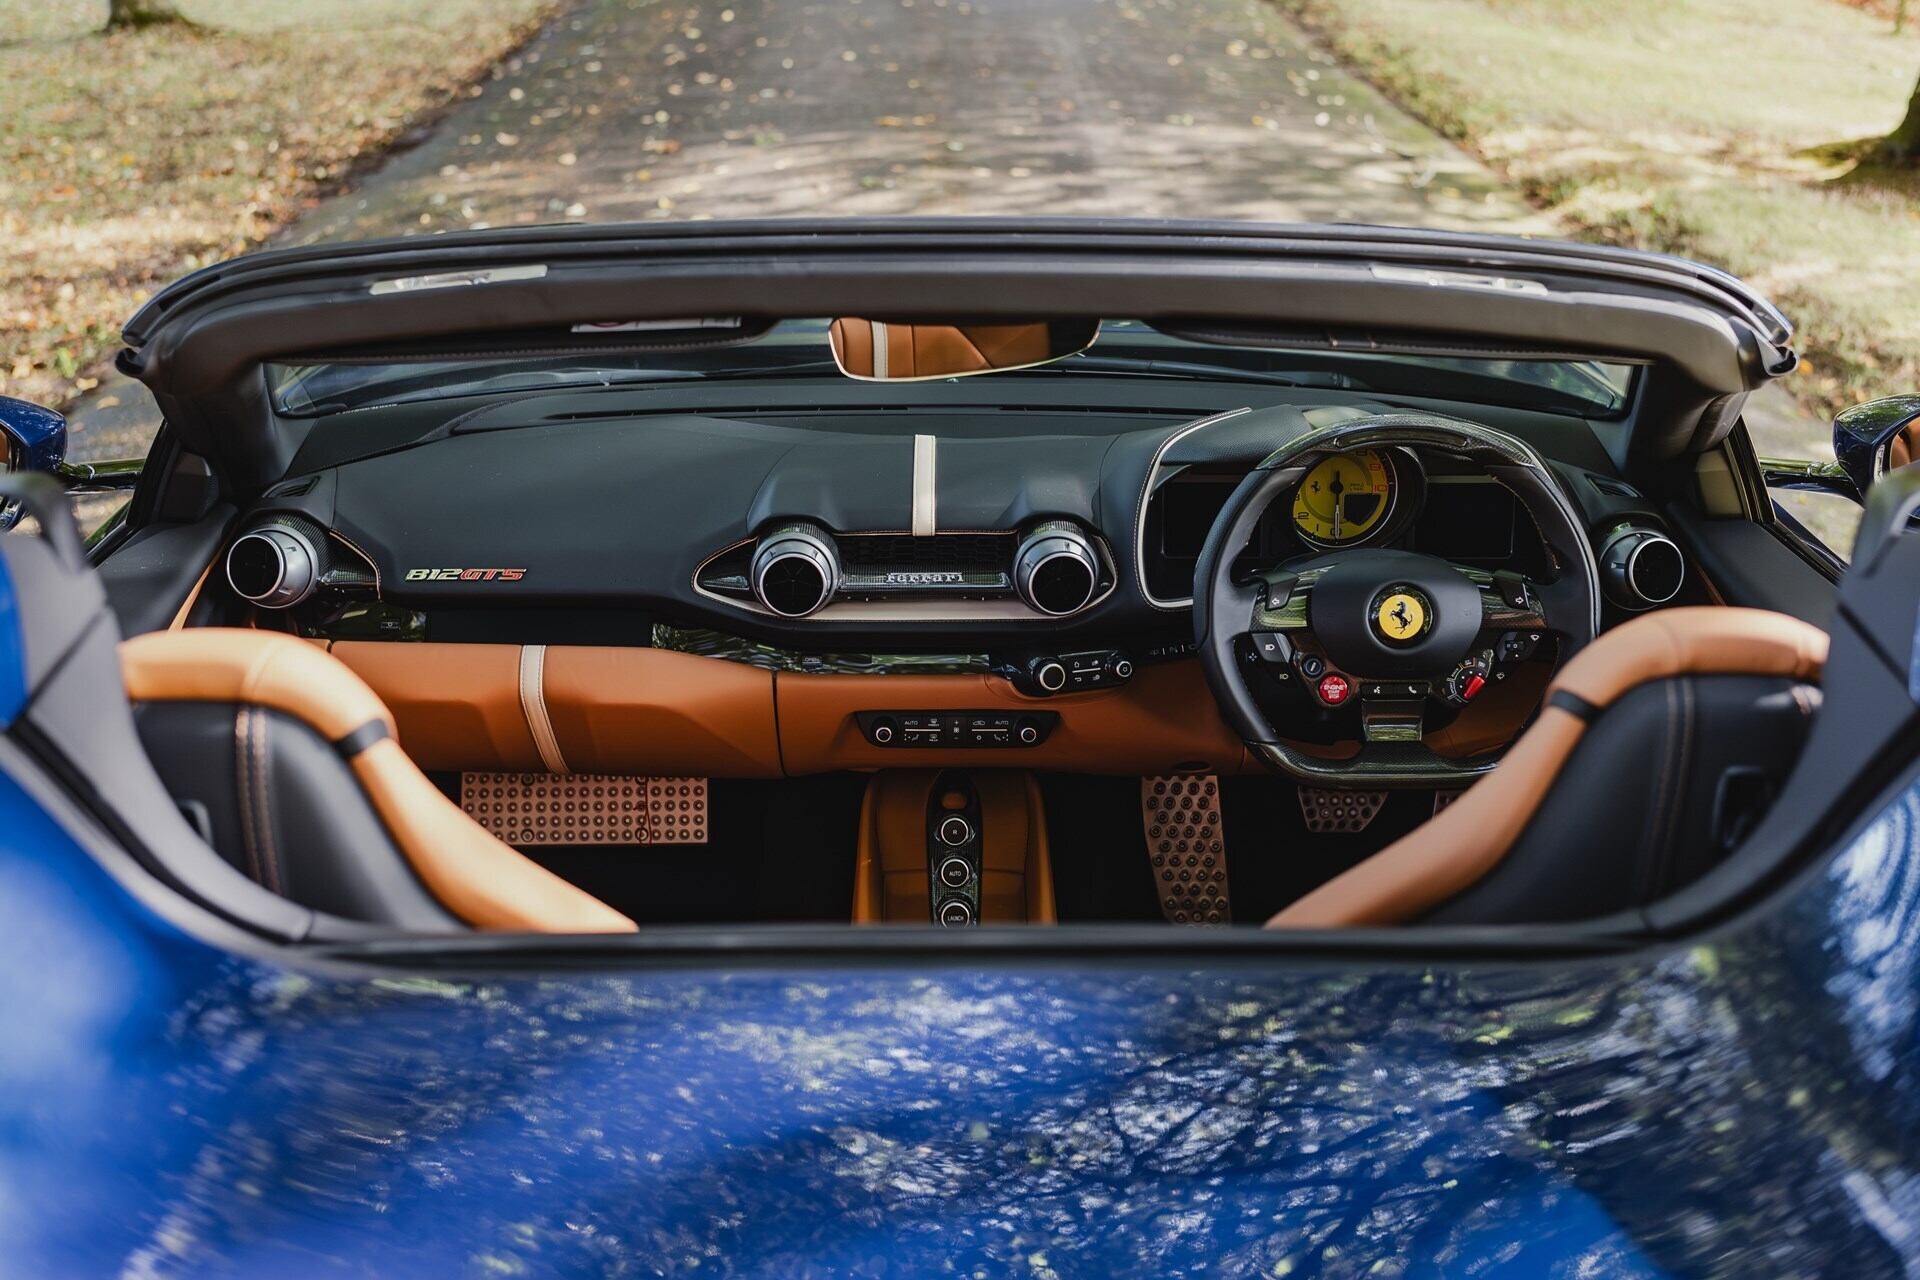 Interior of a blue 2020 Ferrari 812 GTS